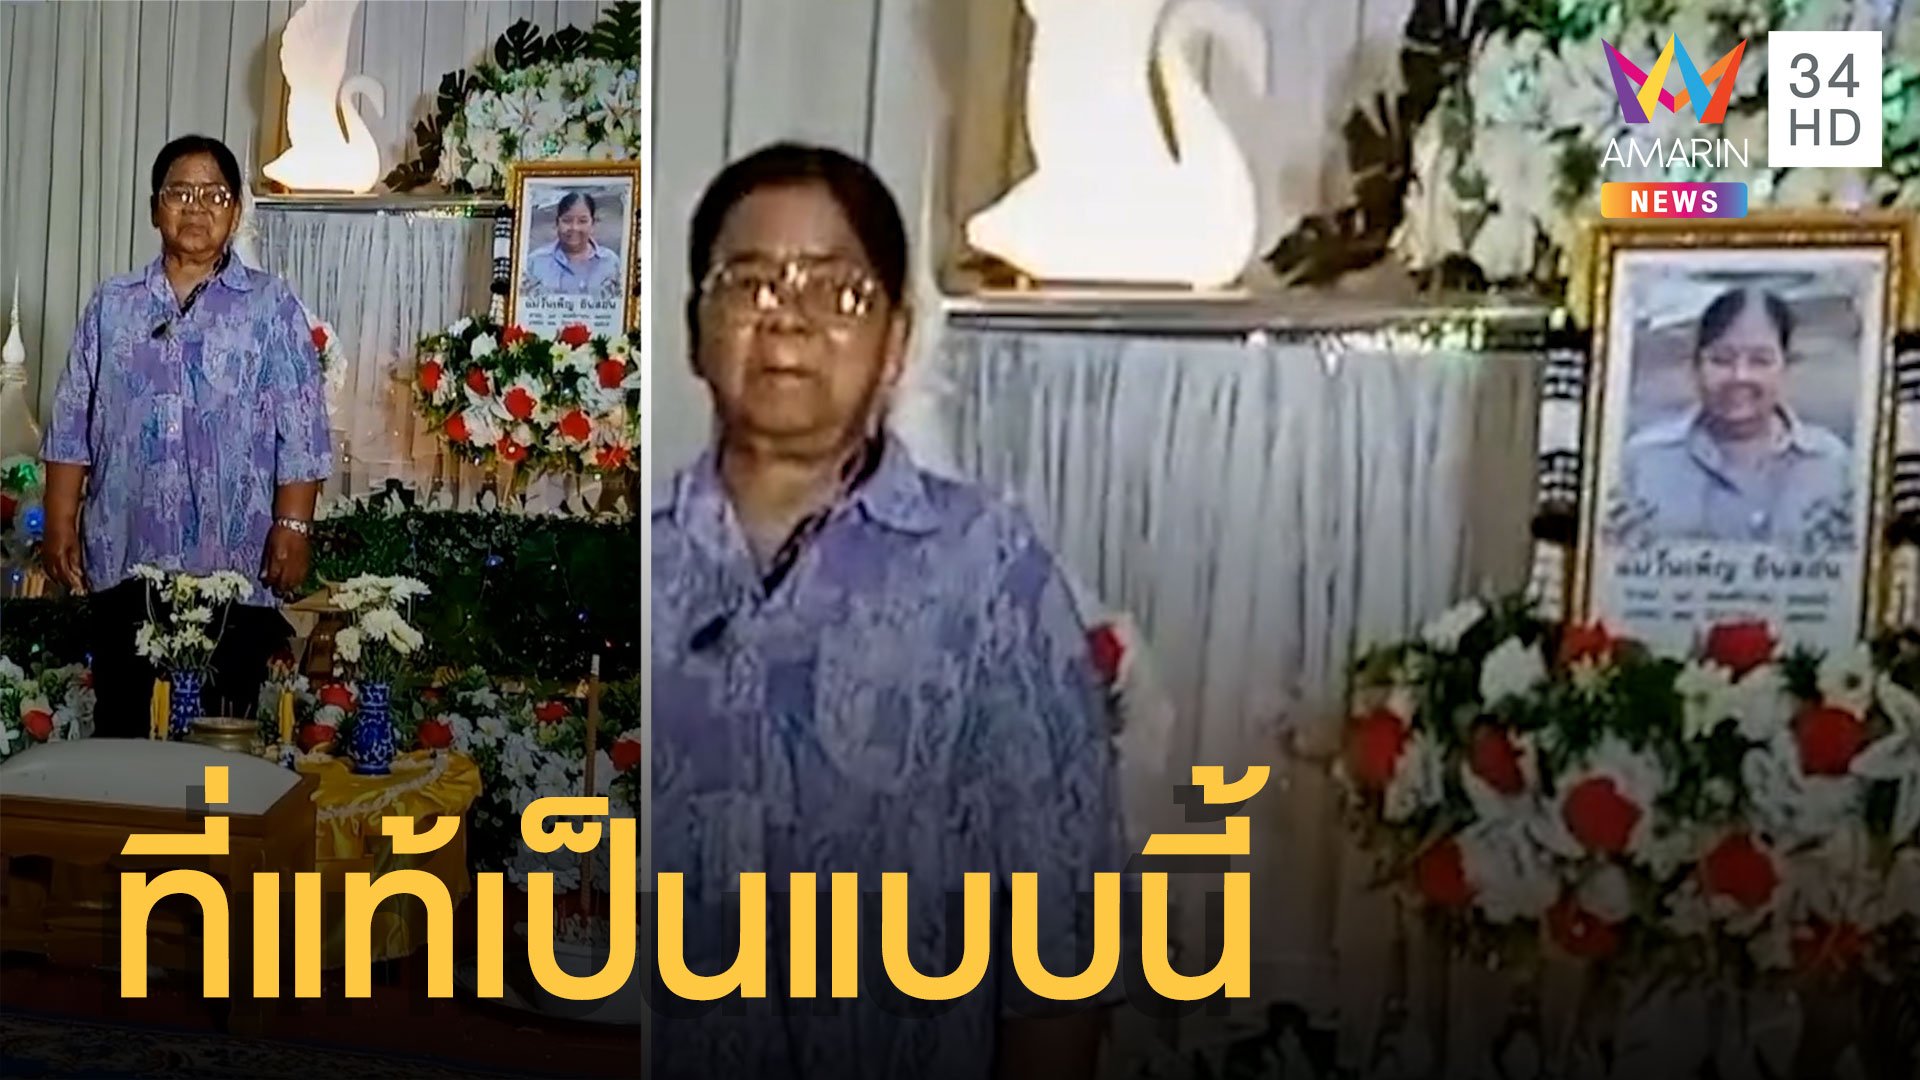 ชาวเน็ตช็อก ในงานศพเจอคนตายหน้าโลง โล่งใจที่แท้เป็นแบบนี้ | ข่าวอรุณอมรินทร์ | 27 มิ.ย. 65 | AMARIN TVHD34